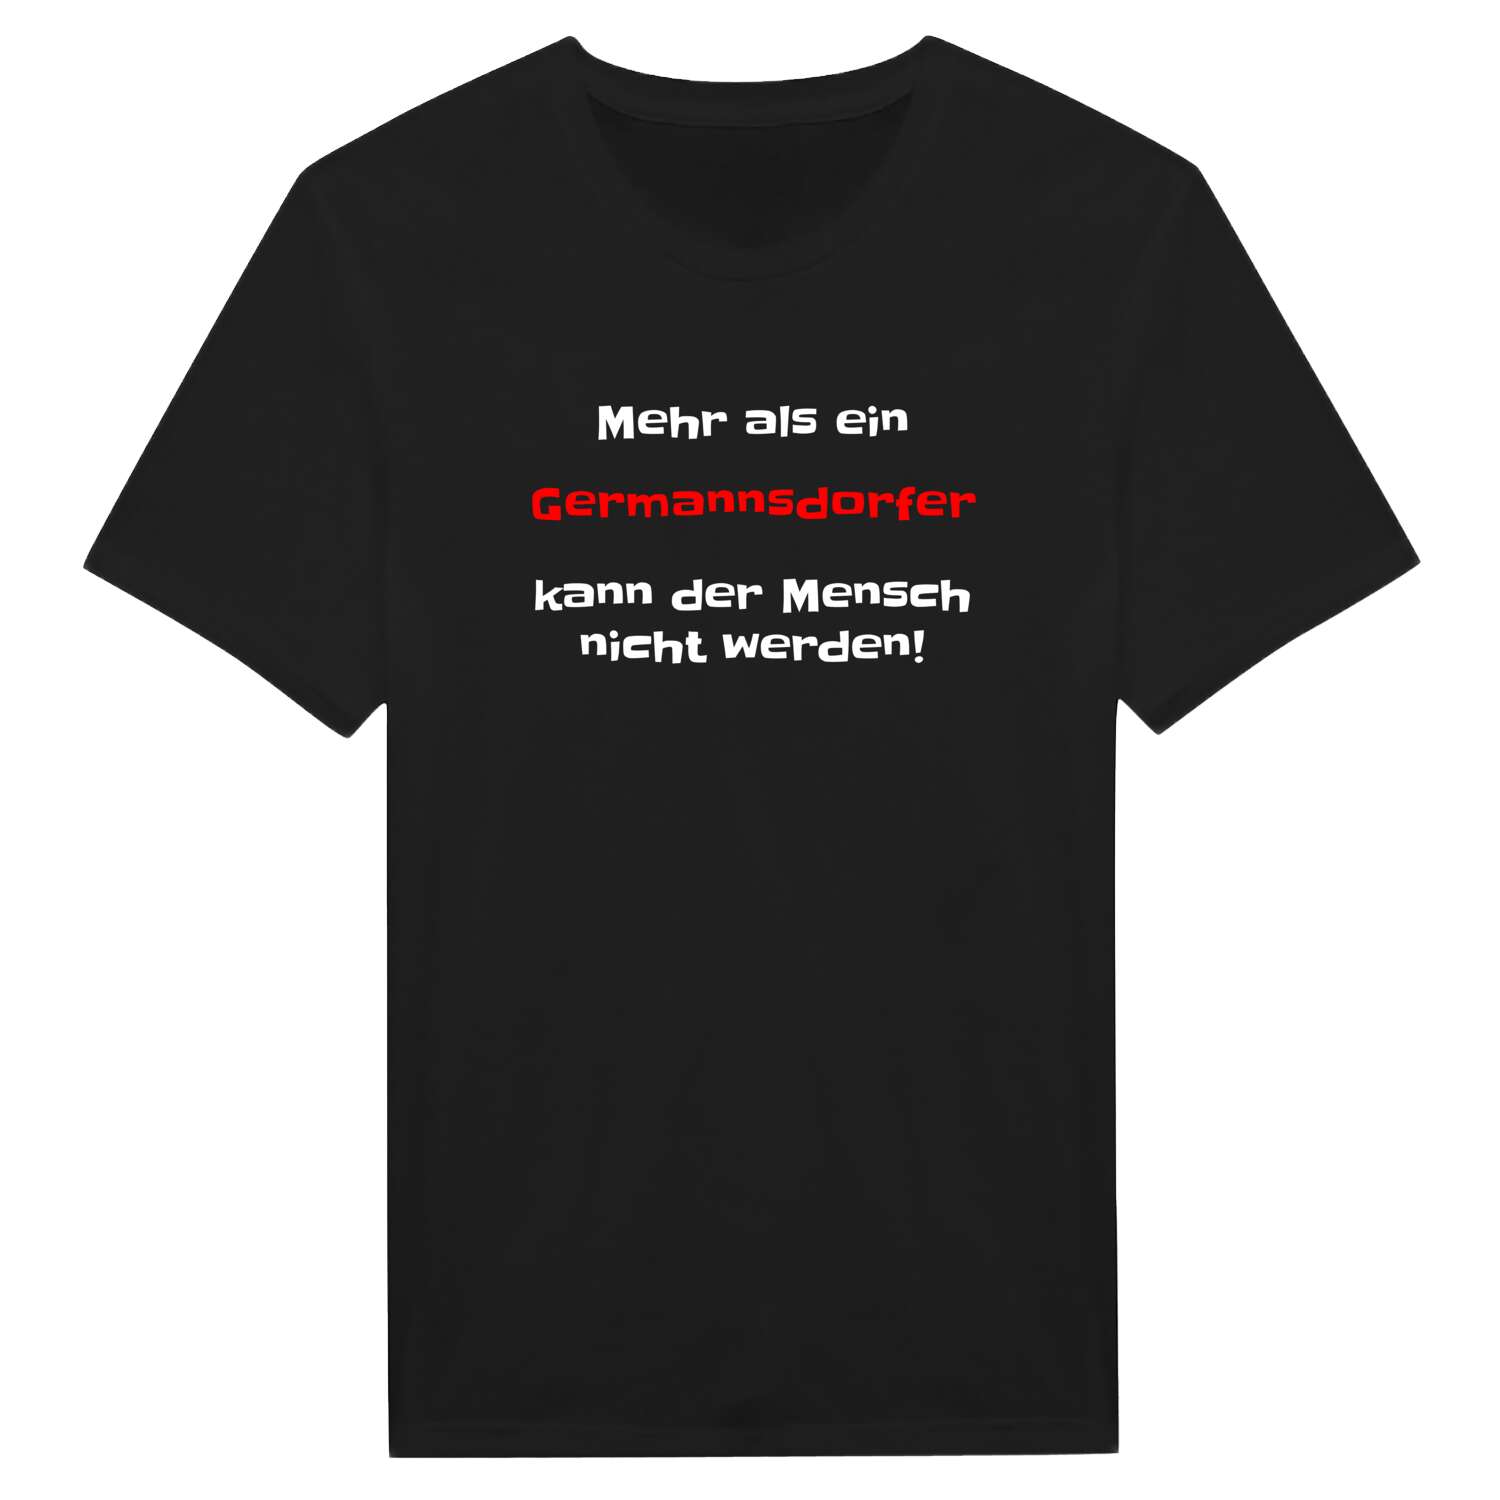 Germannsdorf T-Shirt »Mehr als ein«